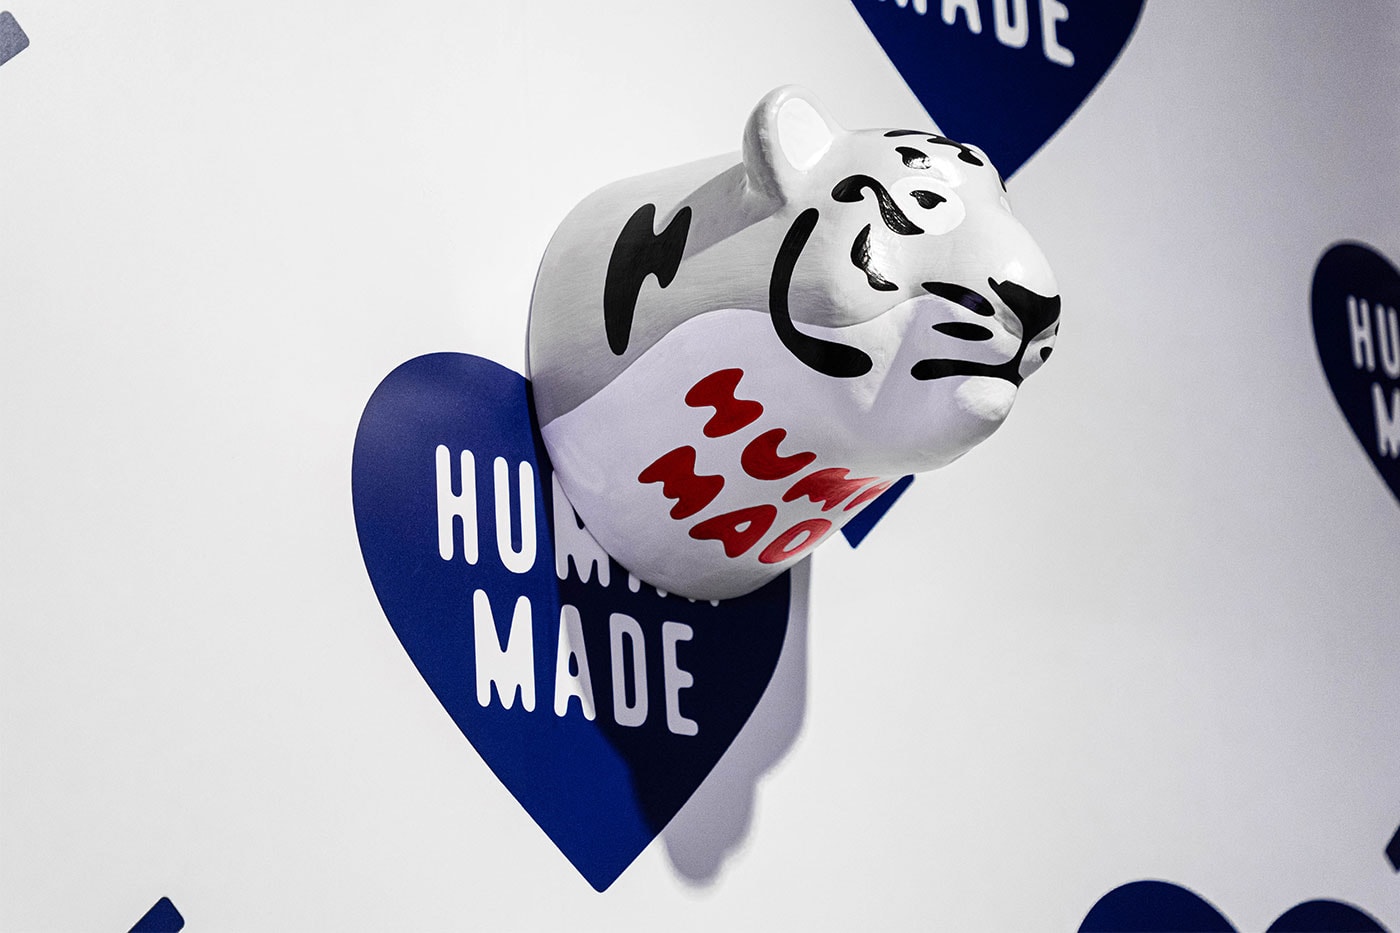 Human Made NIGO HBX Hong Kong Pop-Up Store Opening Location Info